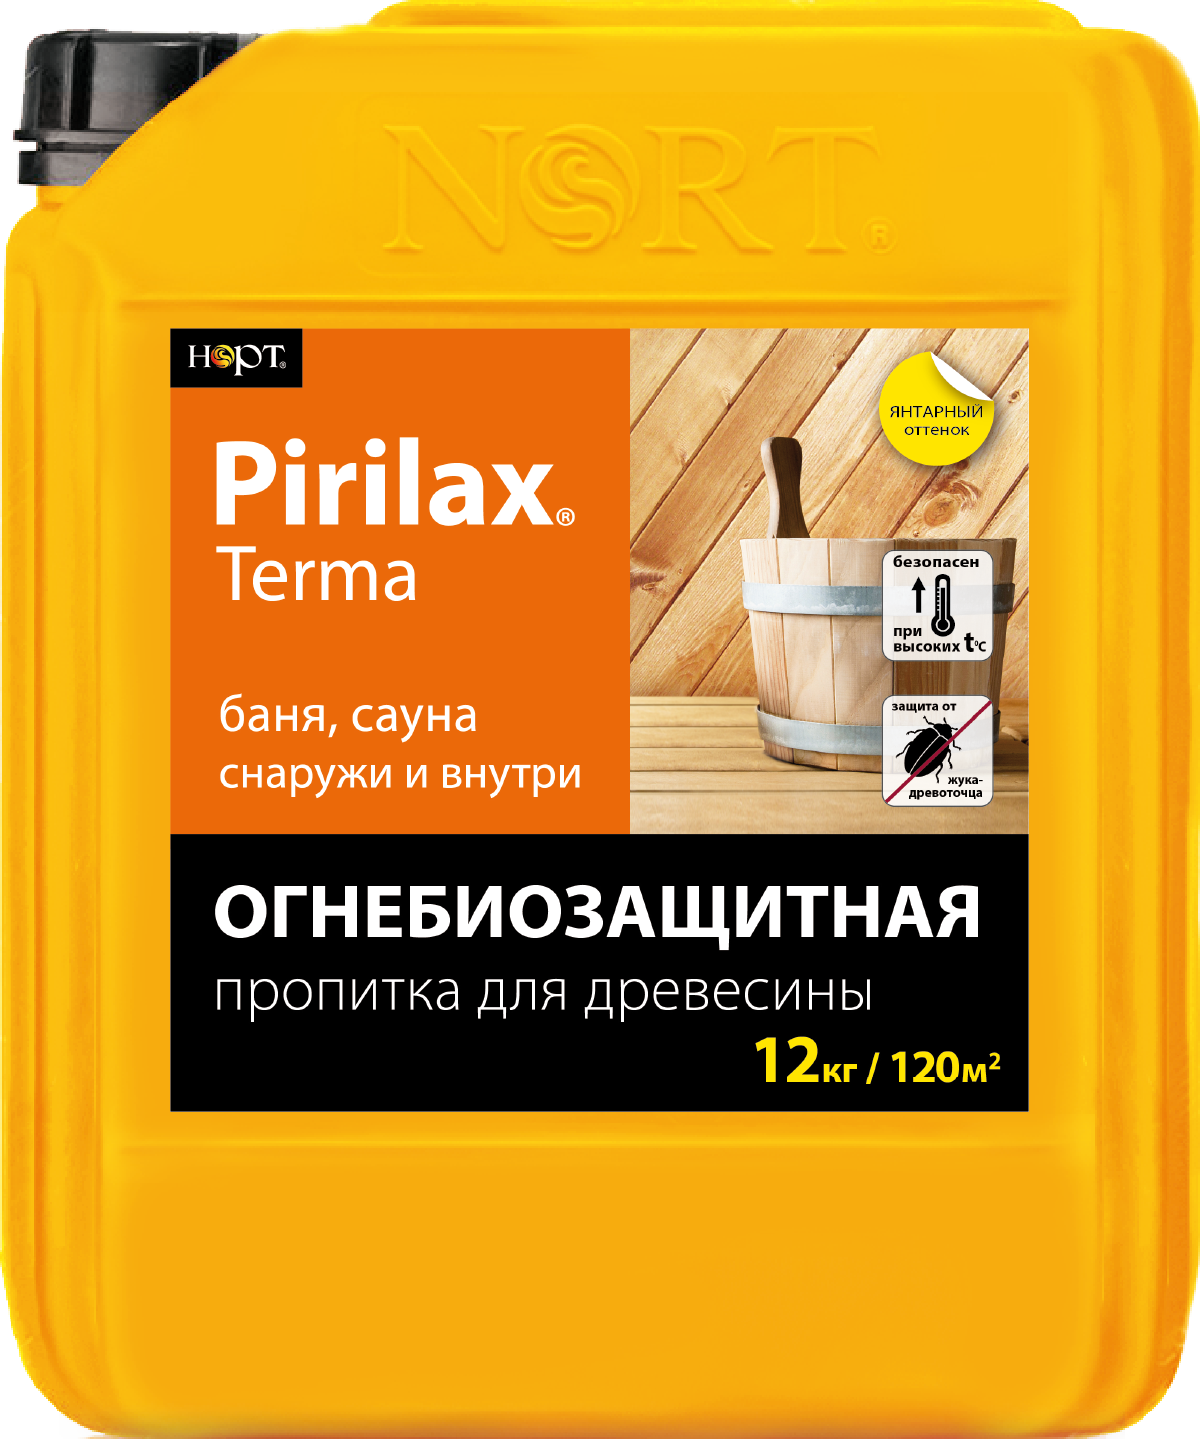 Product image for Пирилакс-ТЕРМА